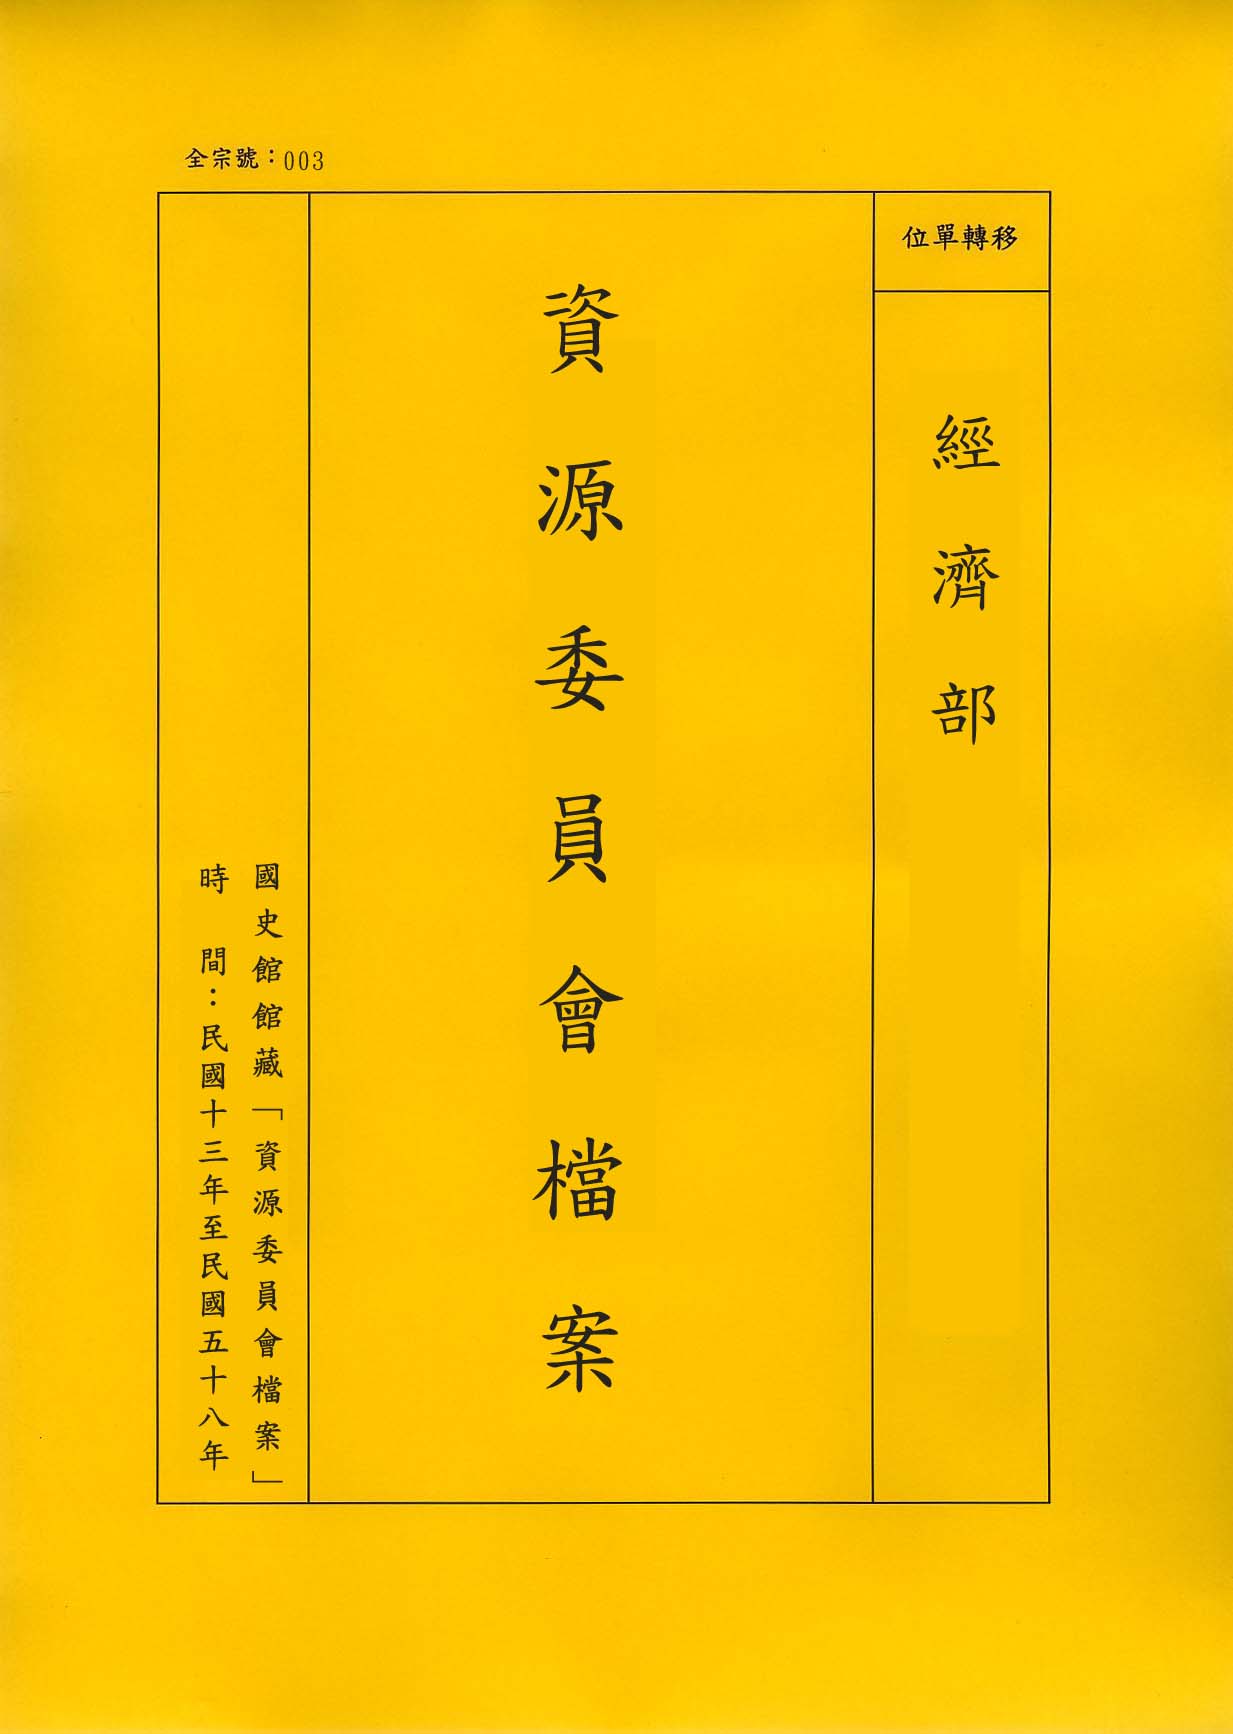 卷名:苑金科函件及實習月報212 Letters and Monthly Reports of Ching(003-020600-2412)